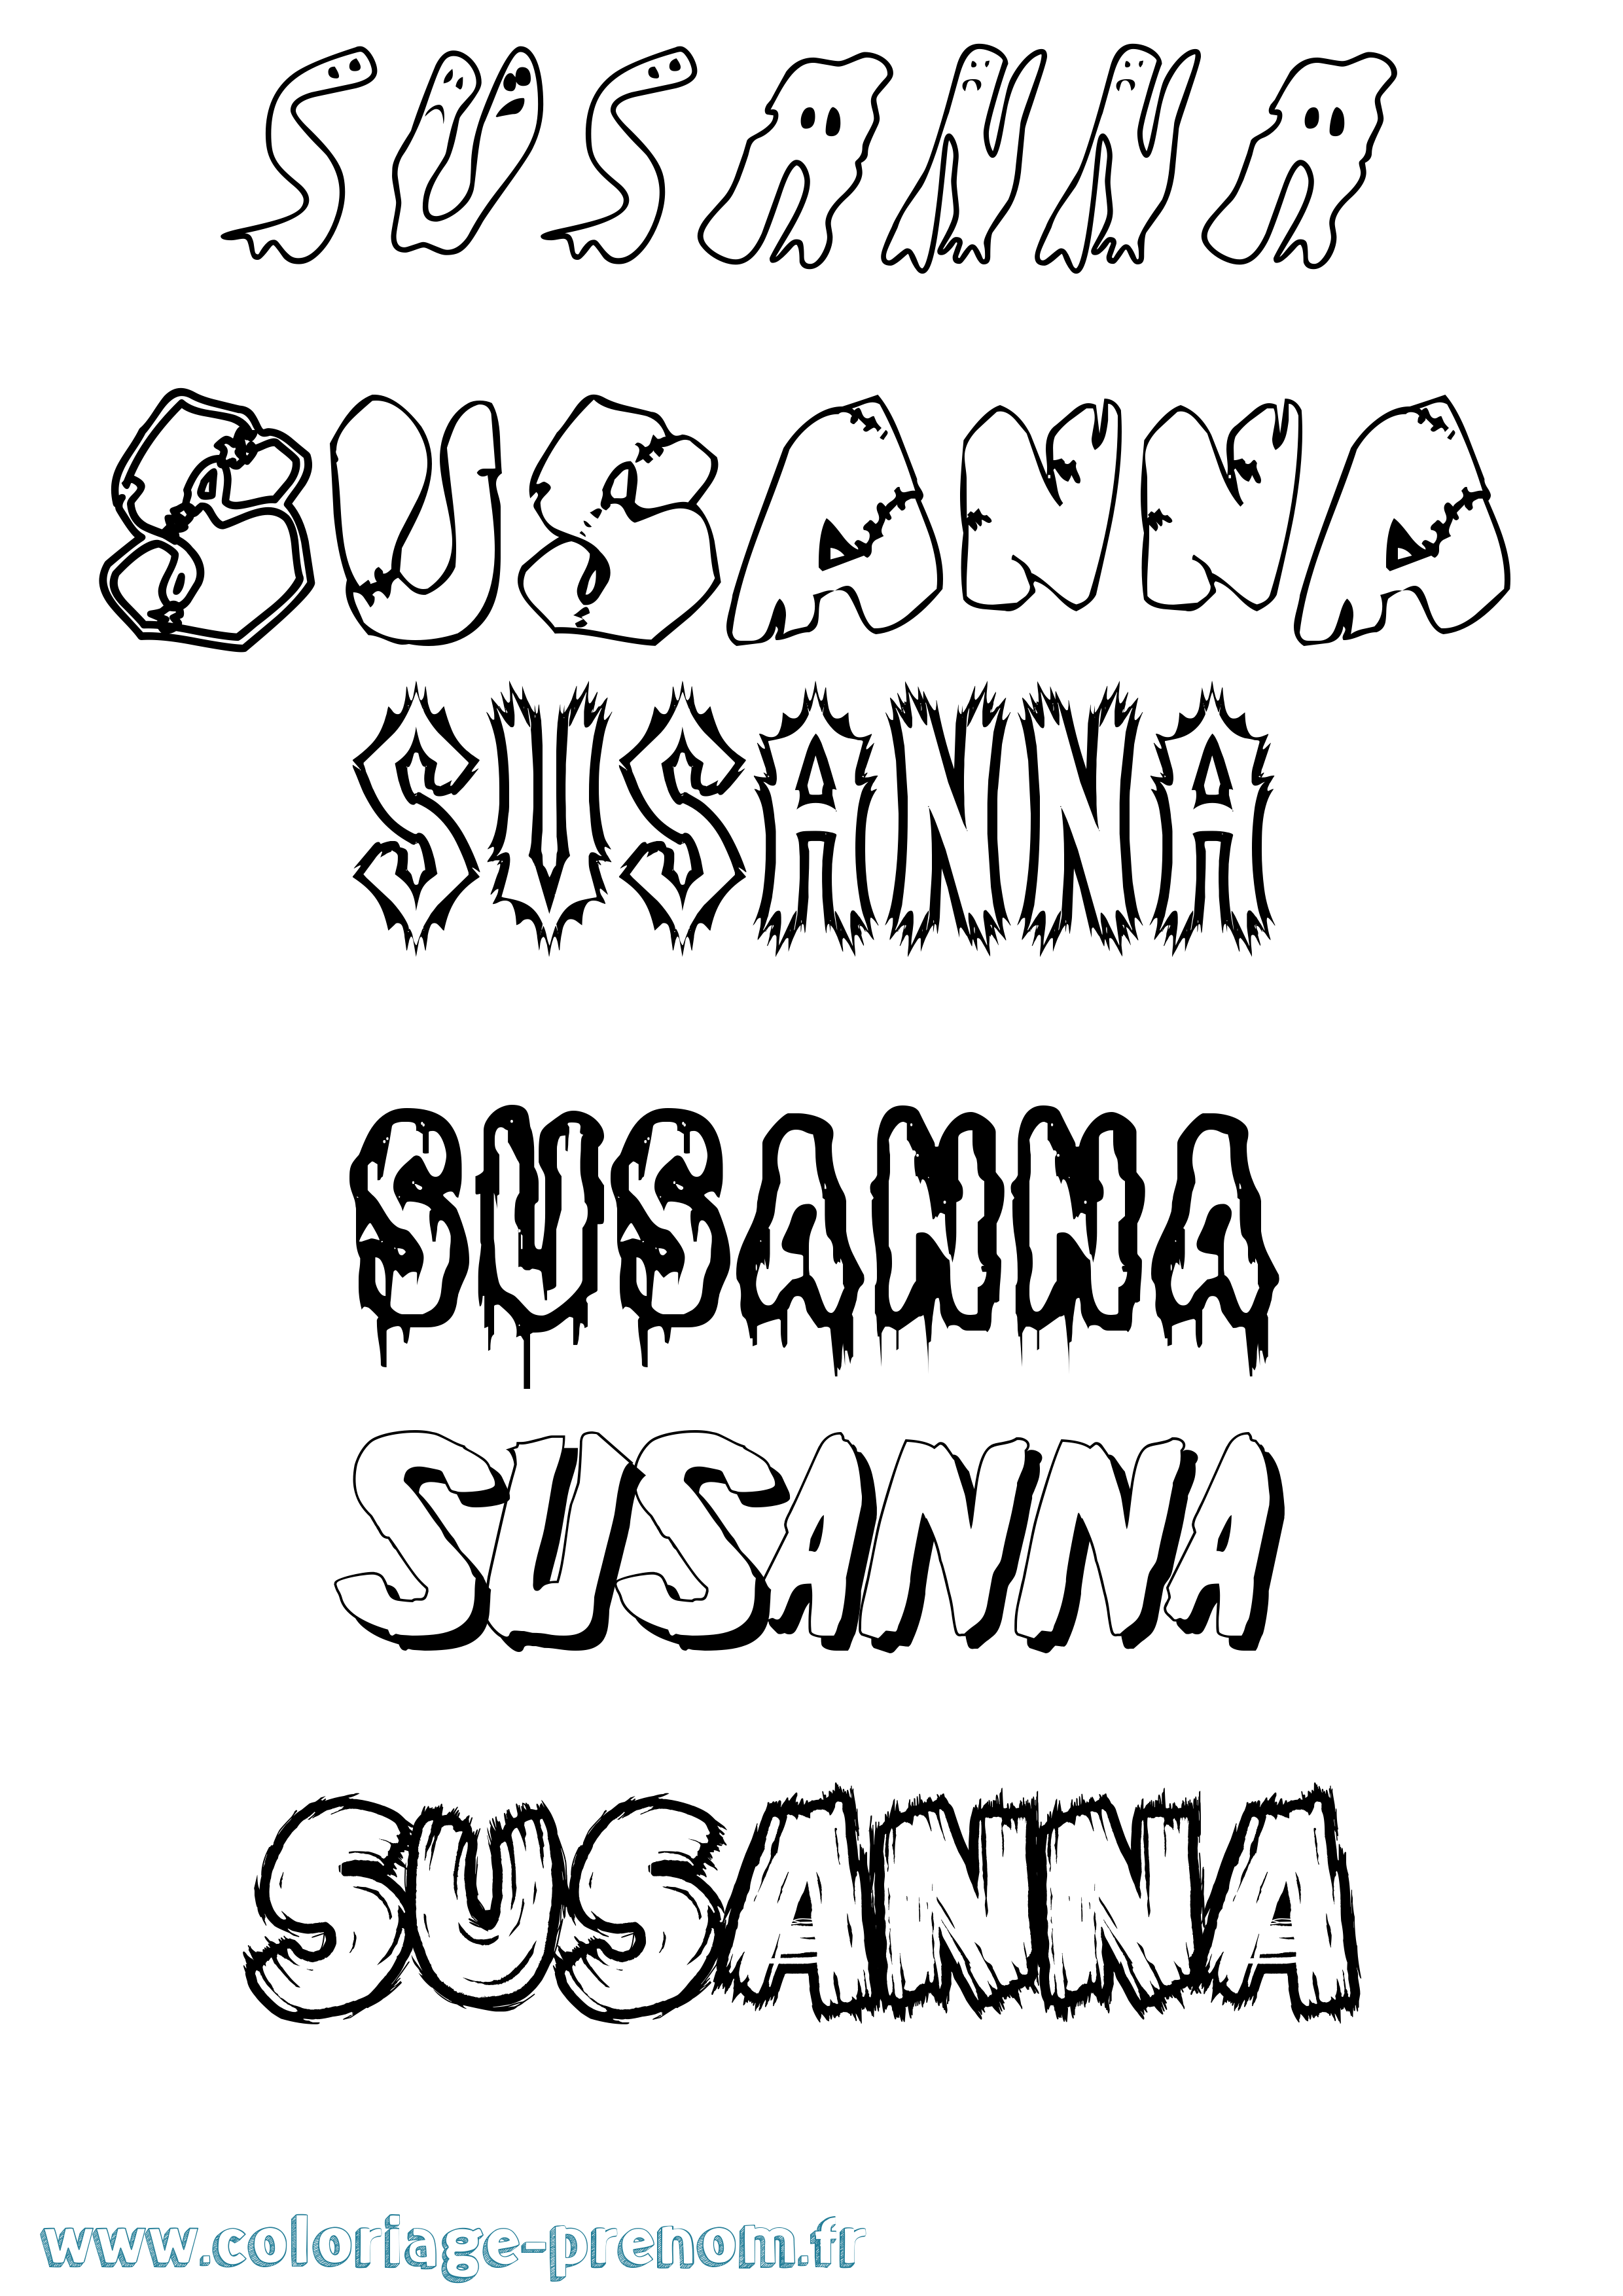 Coloriage prénom Susanna Frisson